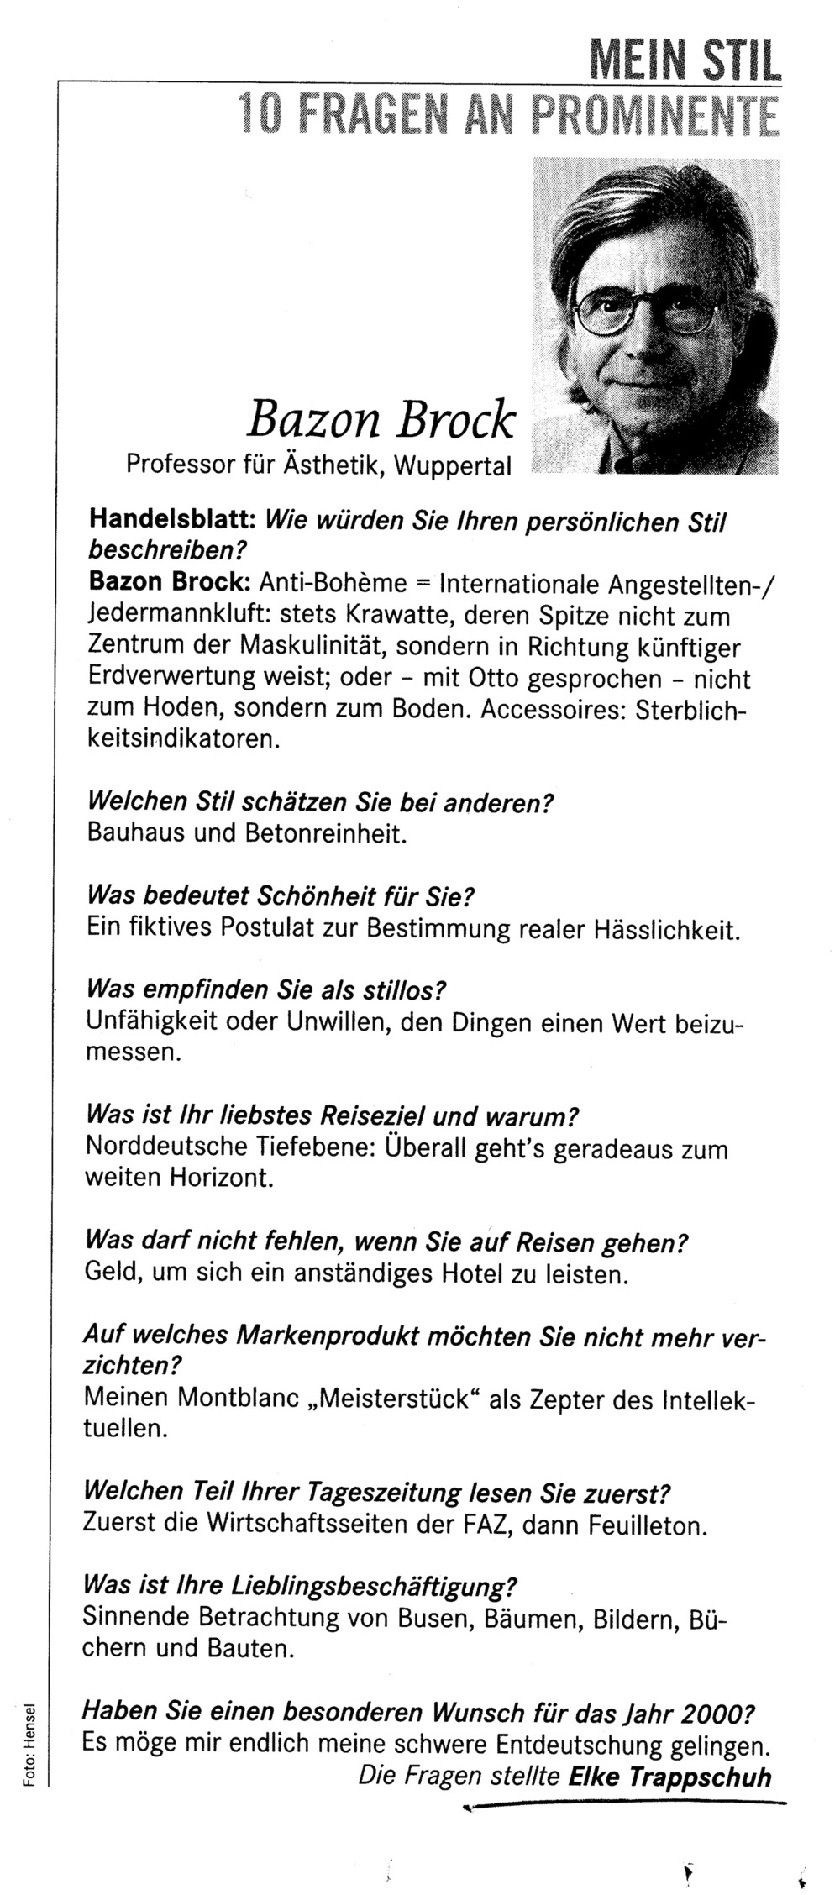 Mein Stil, Handelsblatt 26./27. November 1999